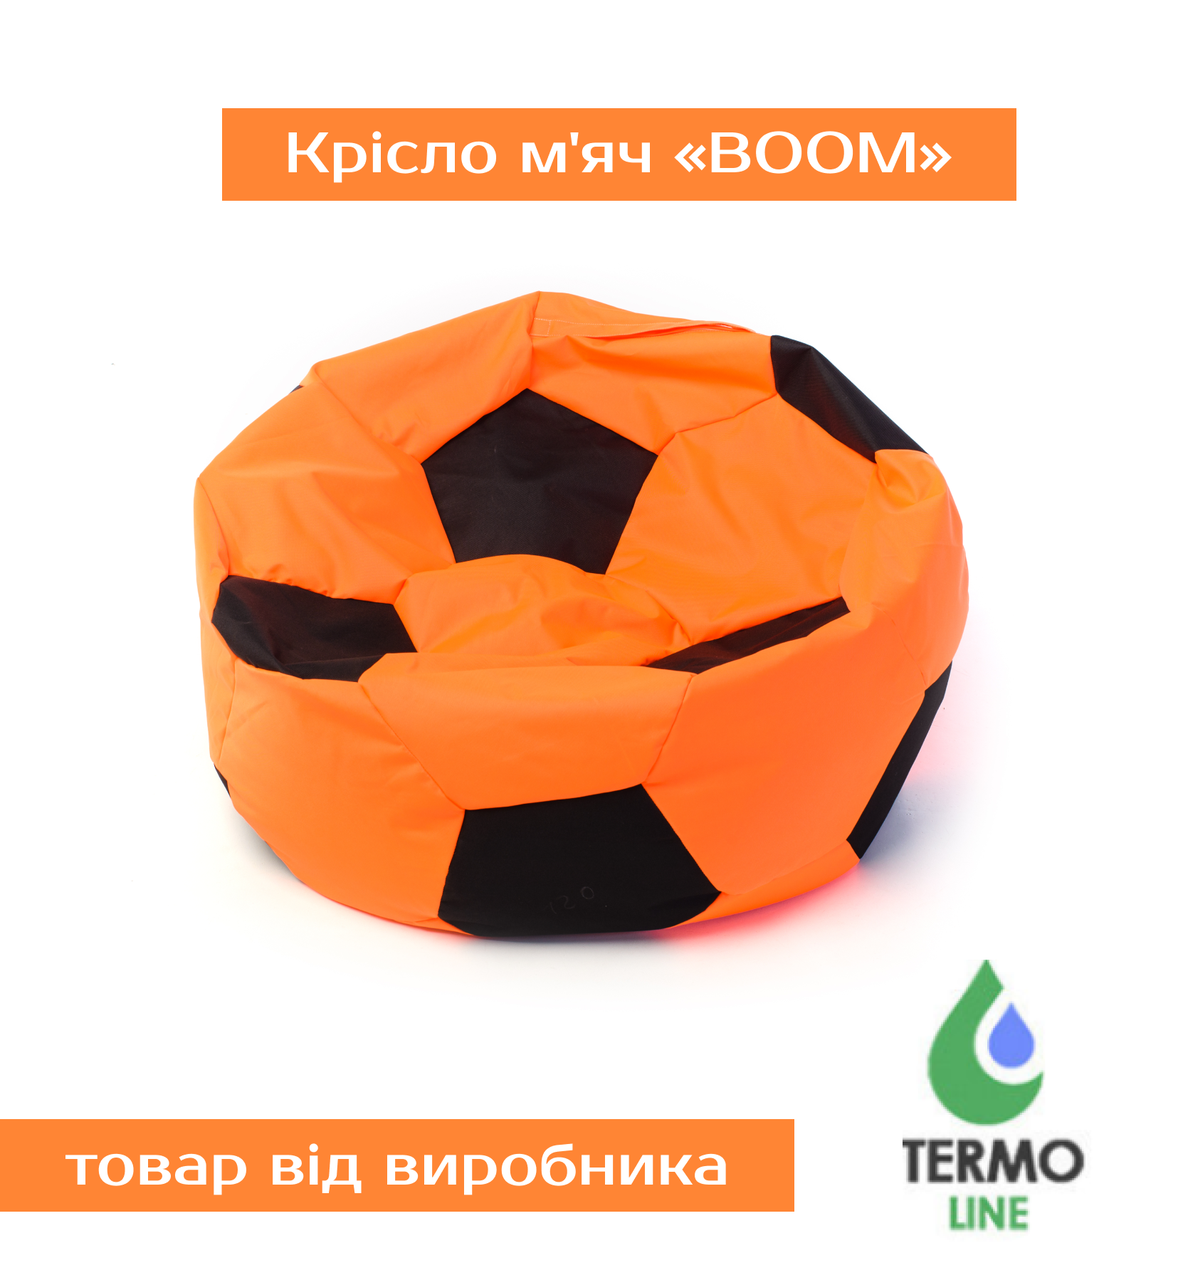 Крісло м'яч «BOOM» 80см оранжево-коричневий, фото 1